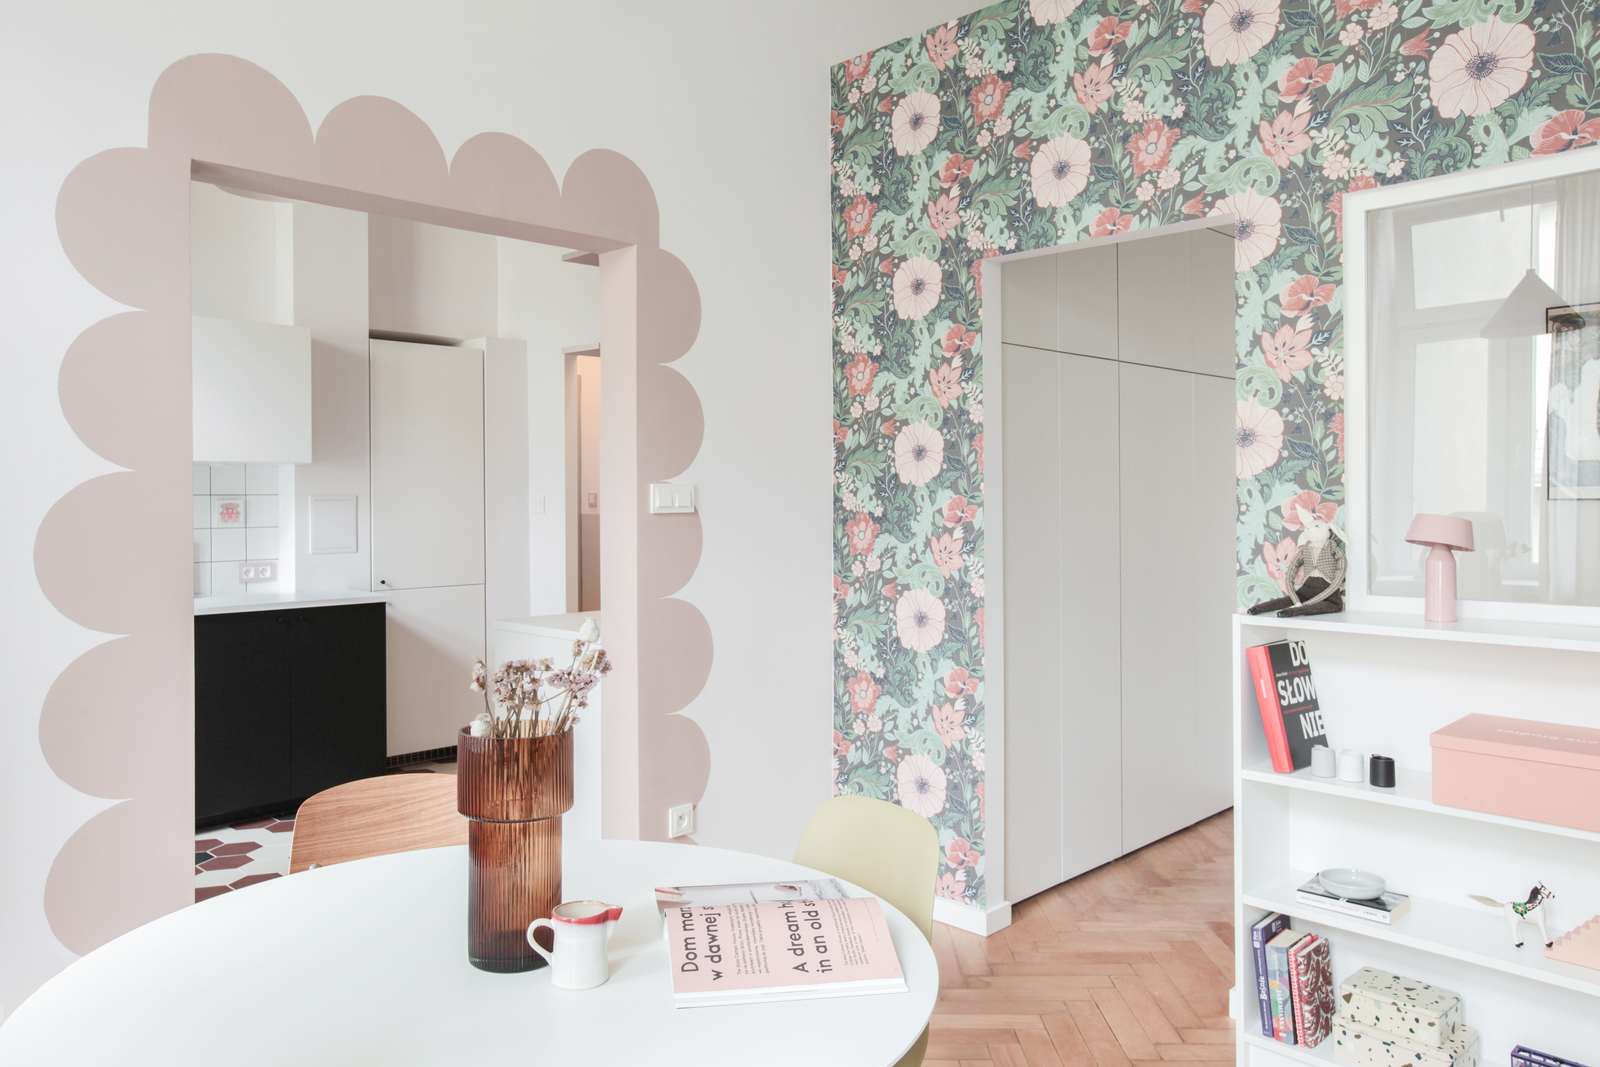 Bức tường chuyển tiếp giữa khu vực phòng bếp và phòng khách - phòng ăn được trang trí như những cánh hoa màu hồng phấn điệu đà trên tường. Một chiếc bàn ăn hình tròn được bố trí để phân vùng giữa phòng bếp và phòng khách.